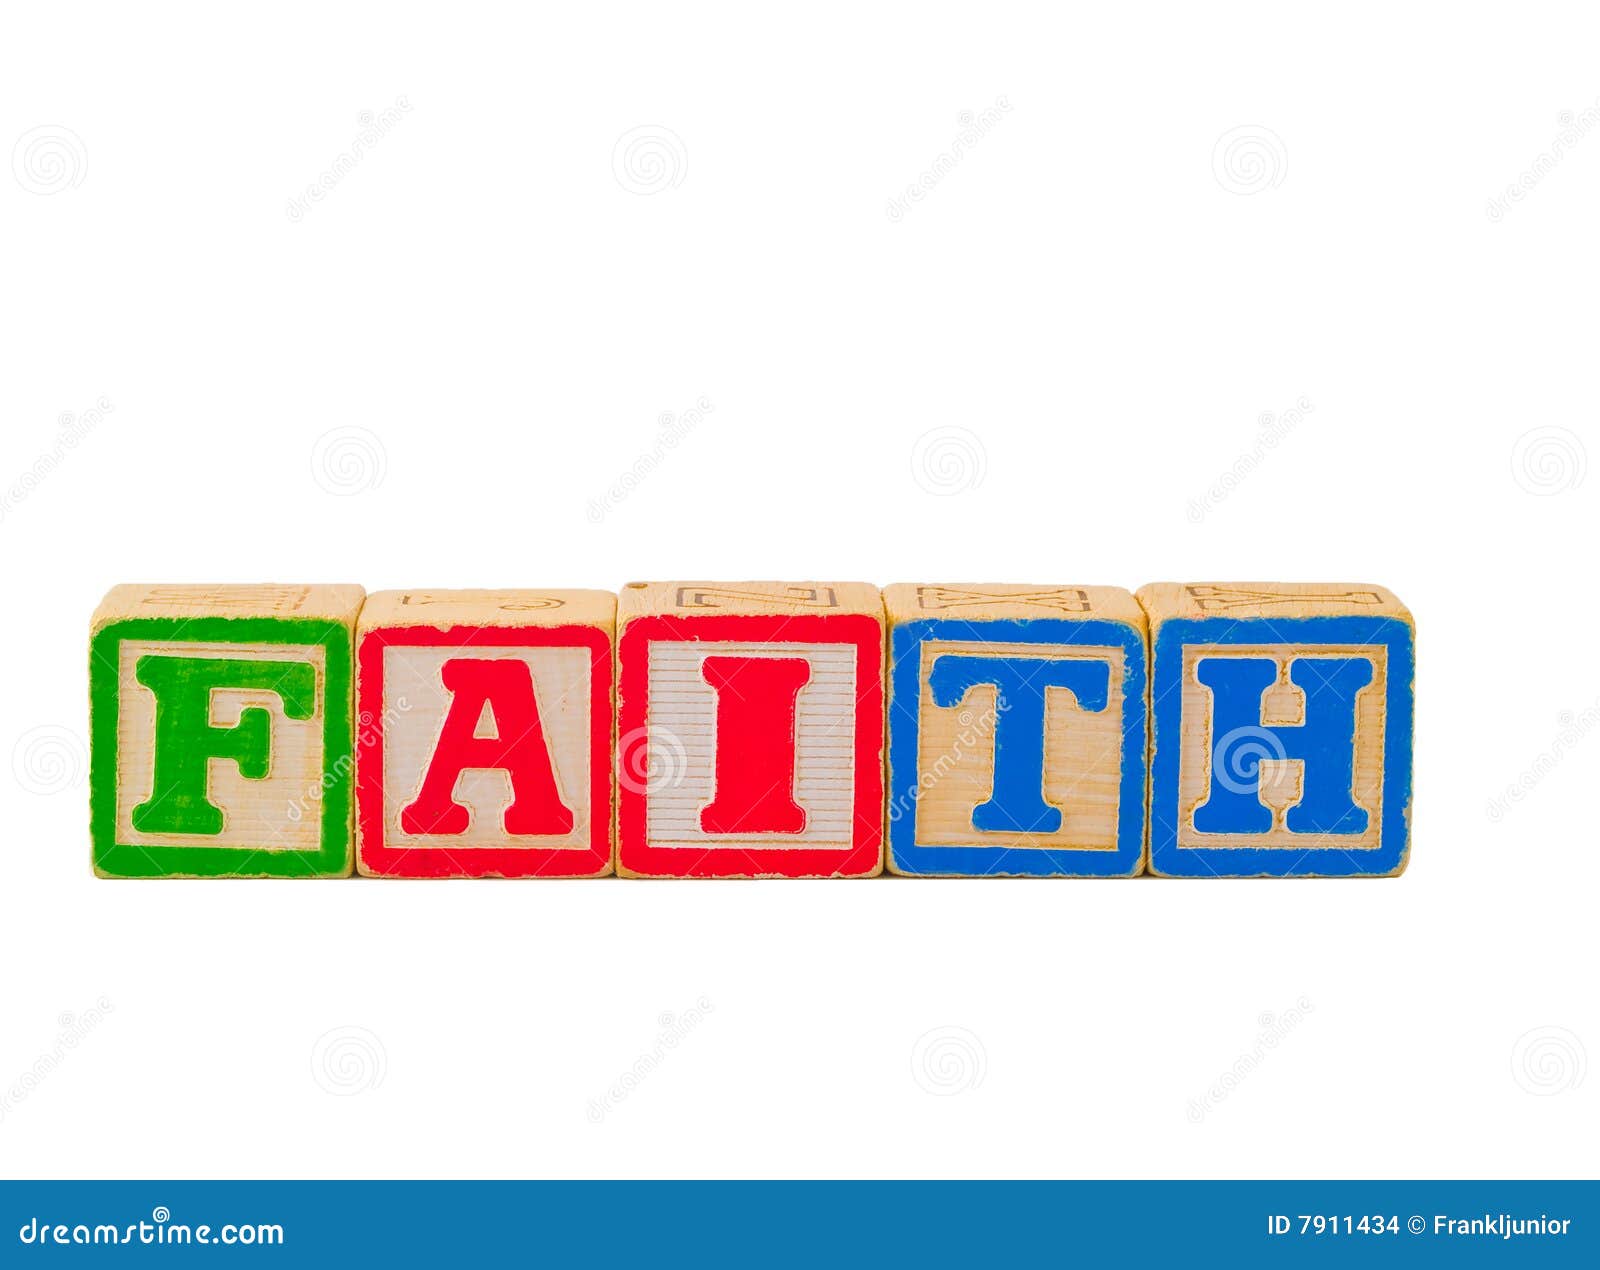 clipart of the word faith - photo #22